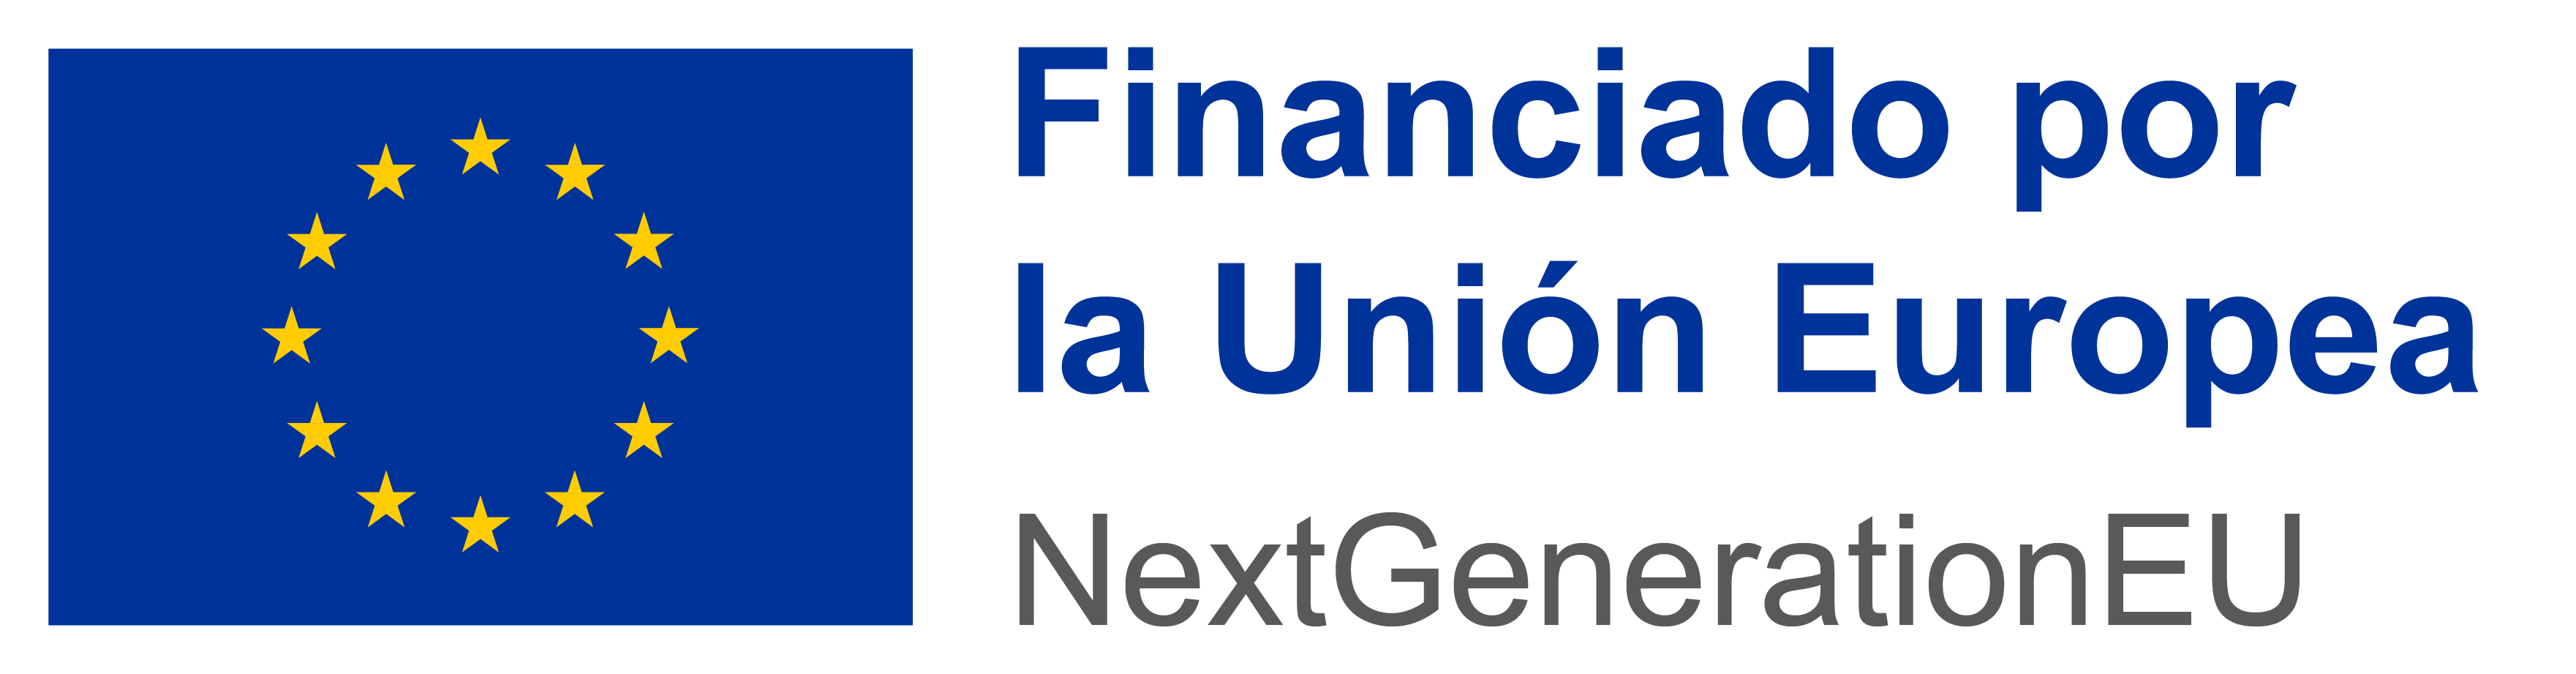 financiado por la Unión Europea - NextGenerationEU